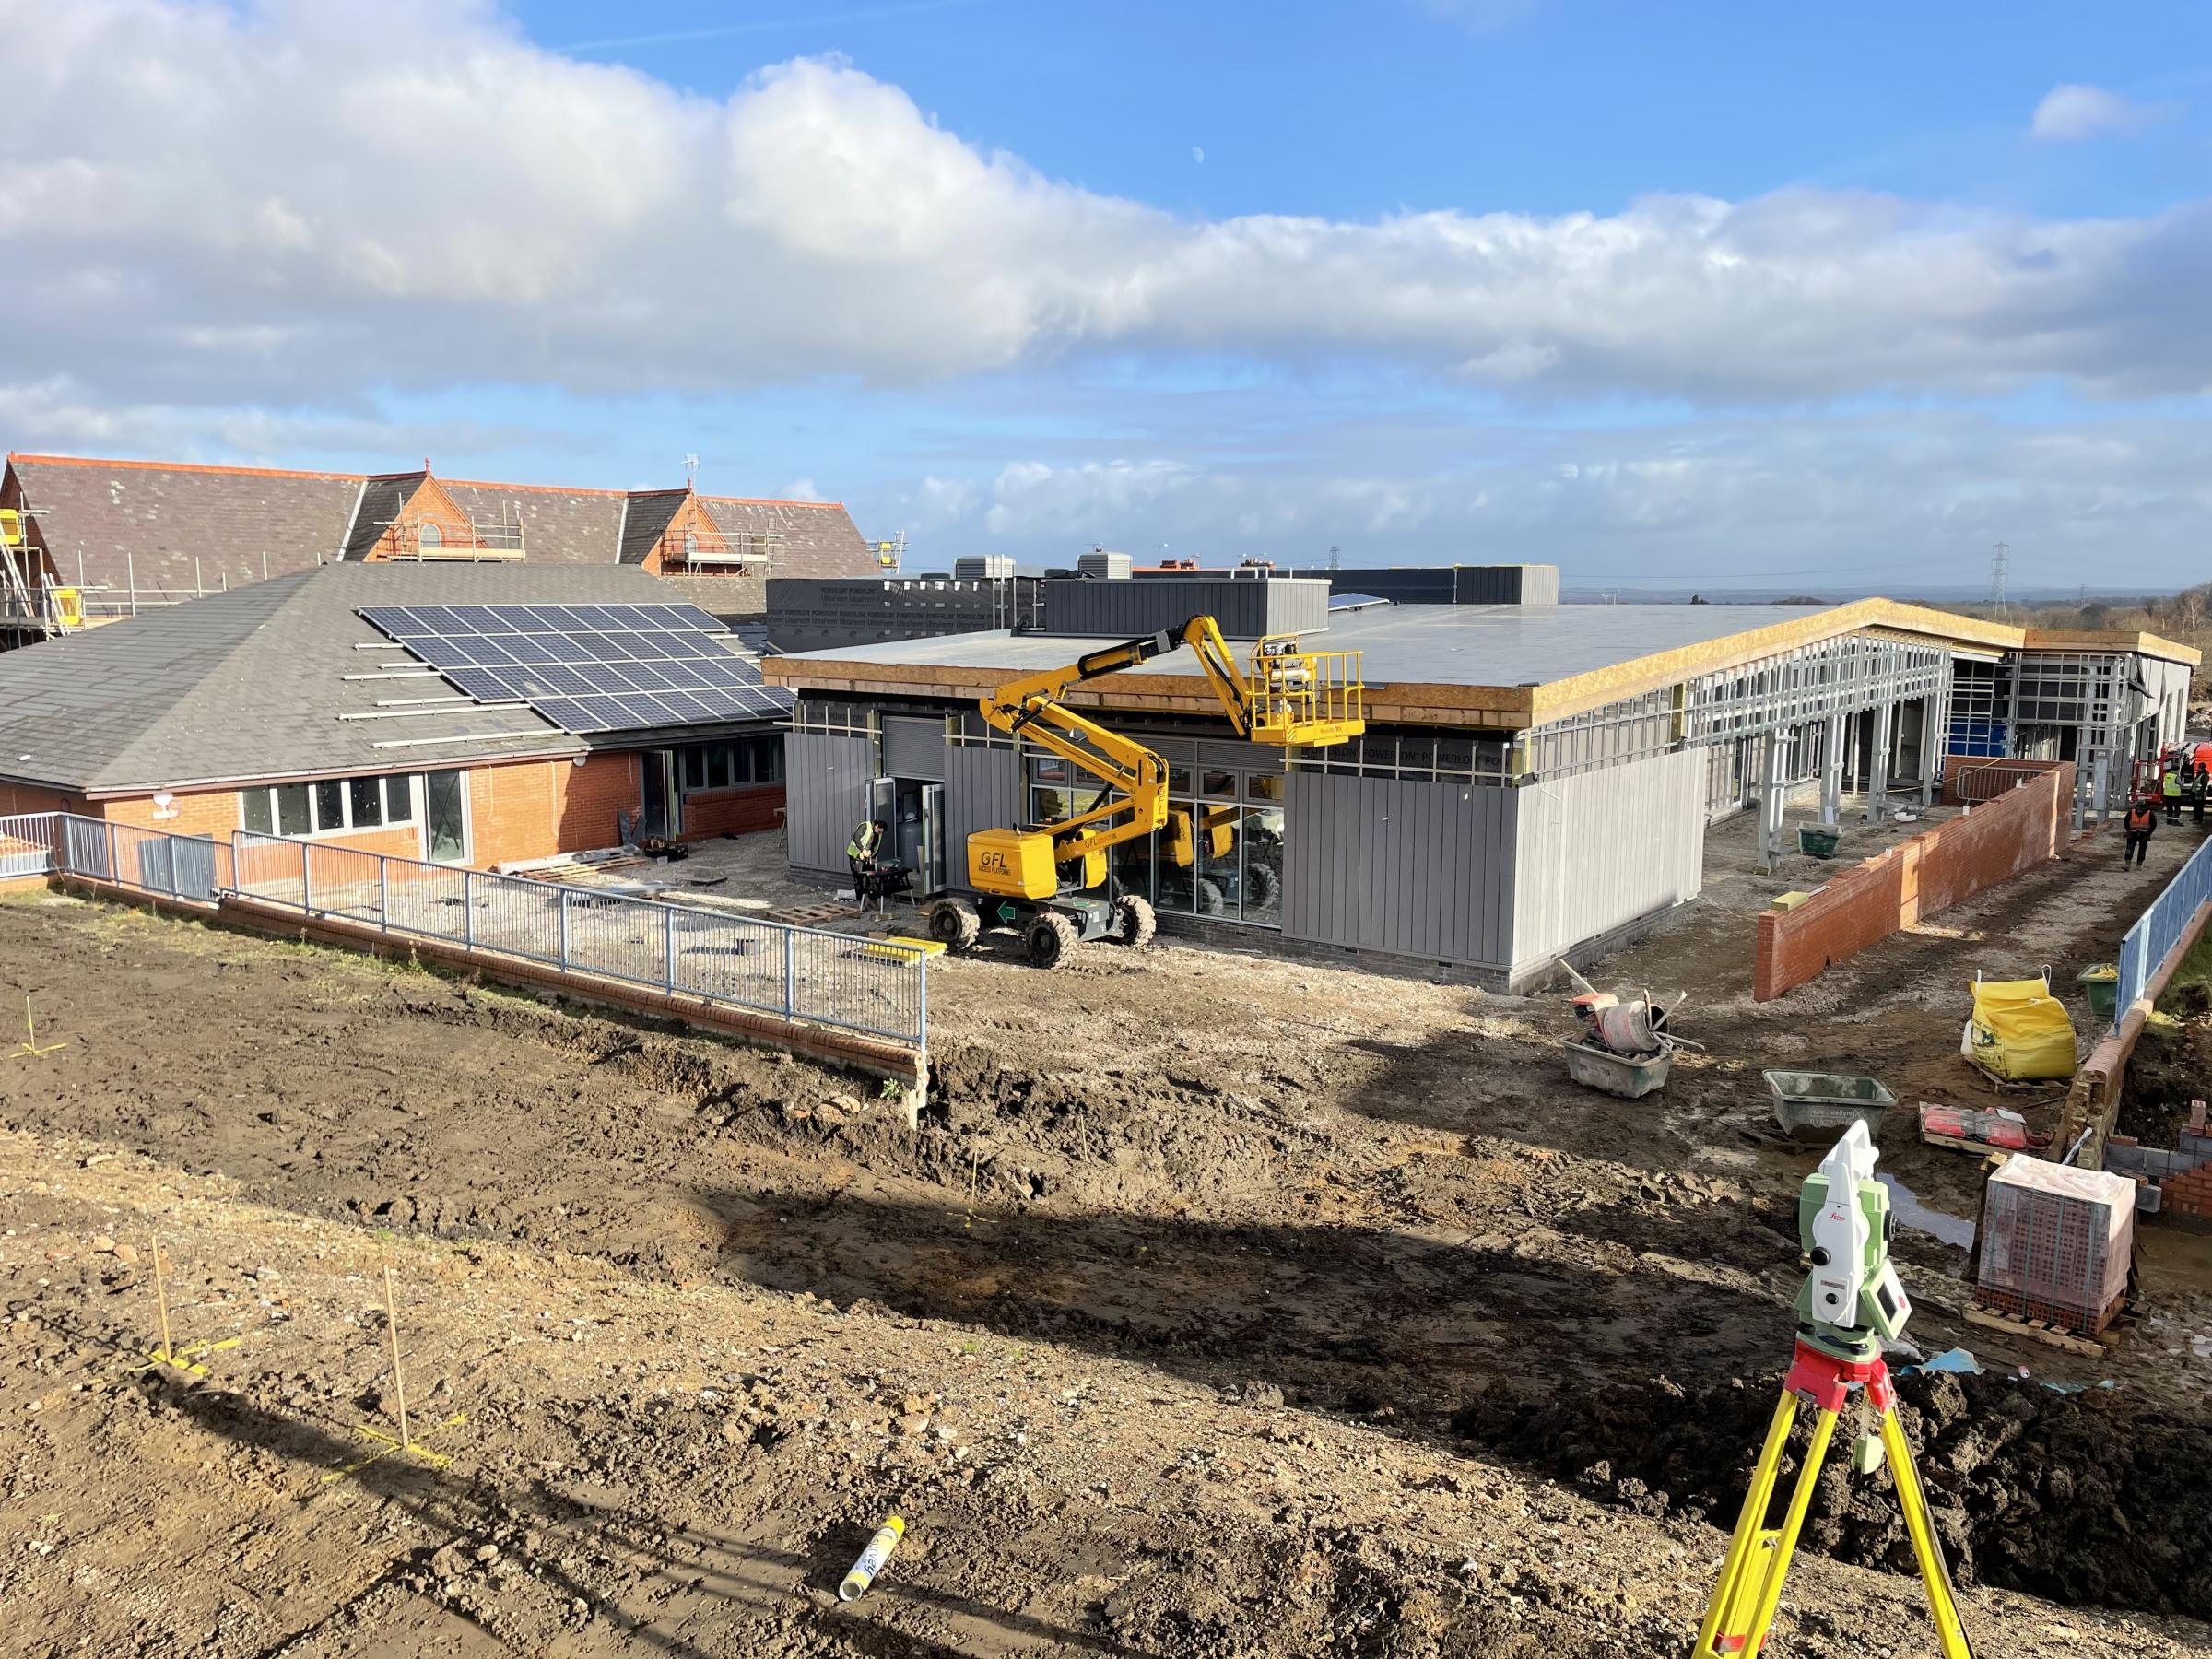 Construction work underway at Ysgol yr Hafod, in Johnstown.